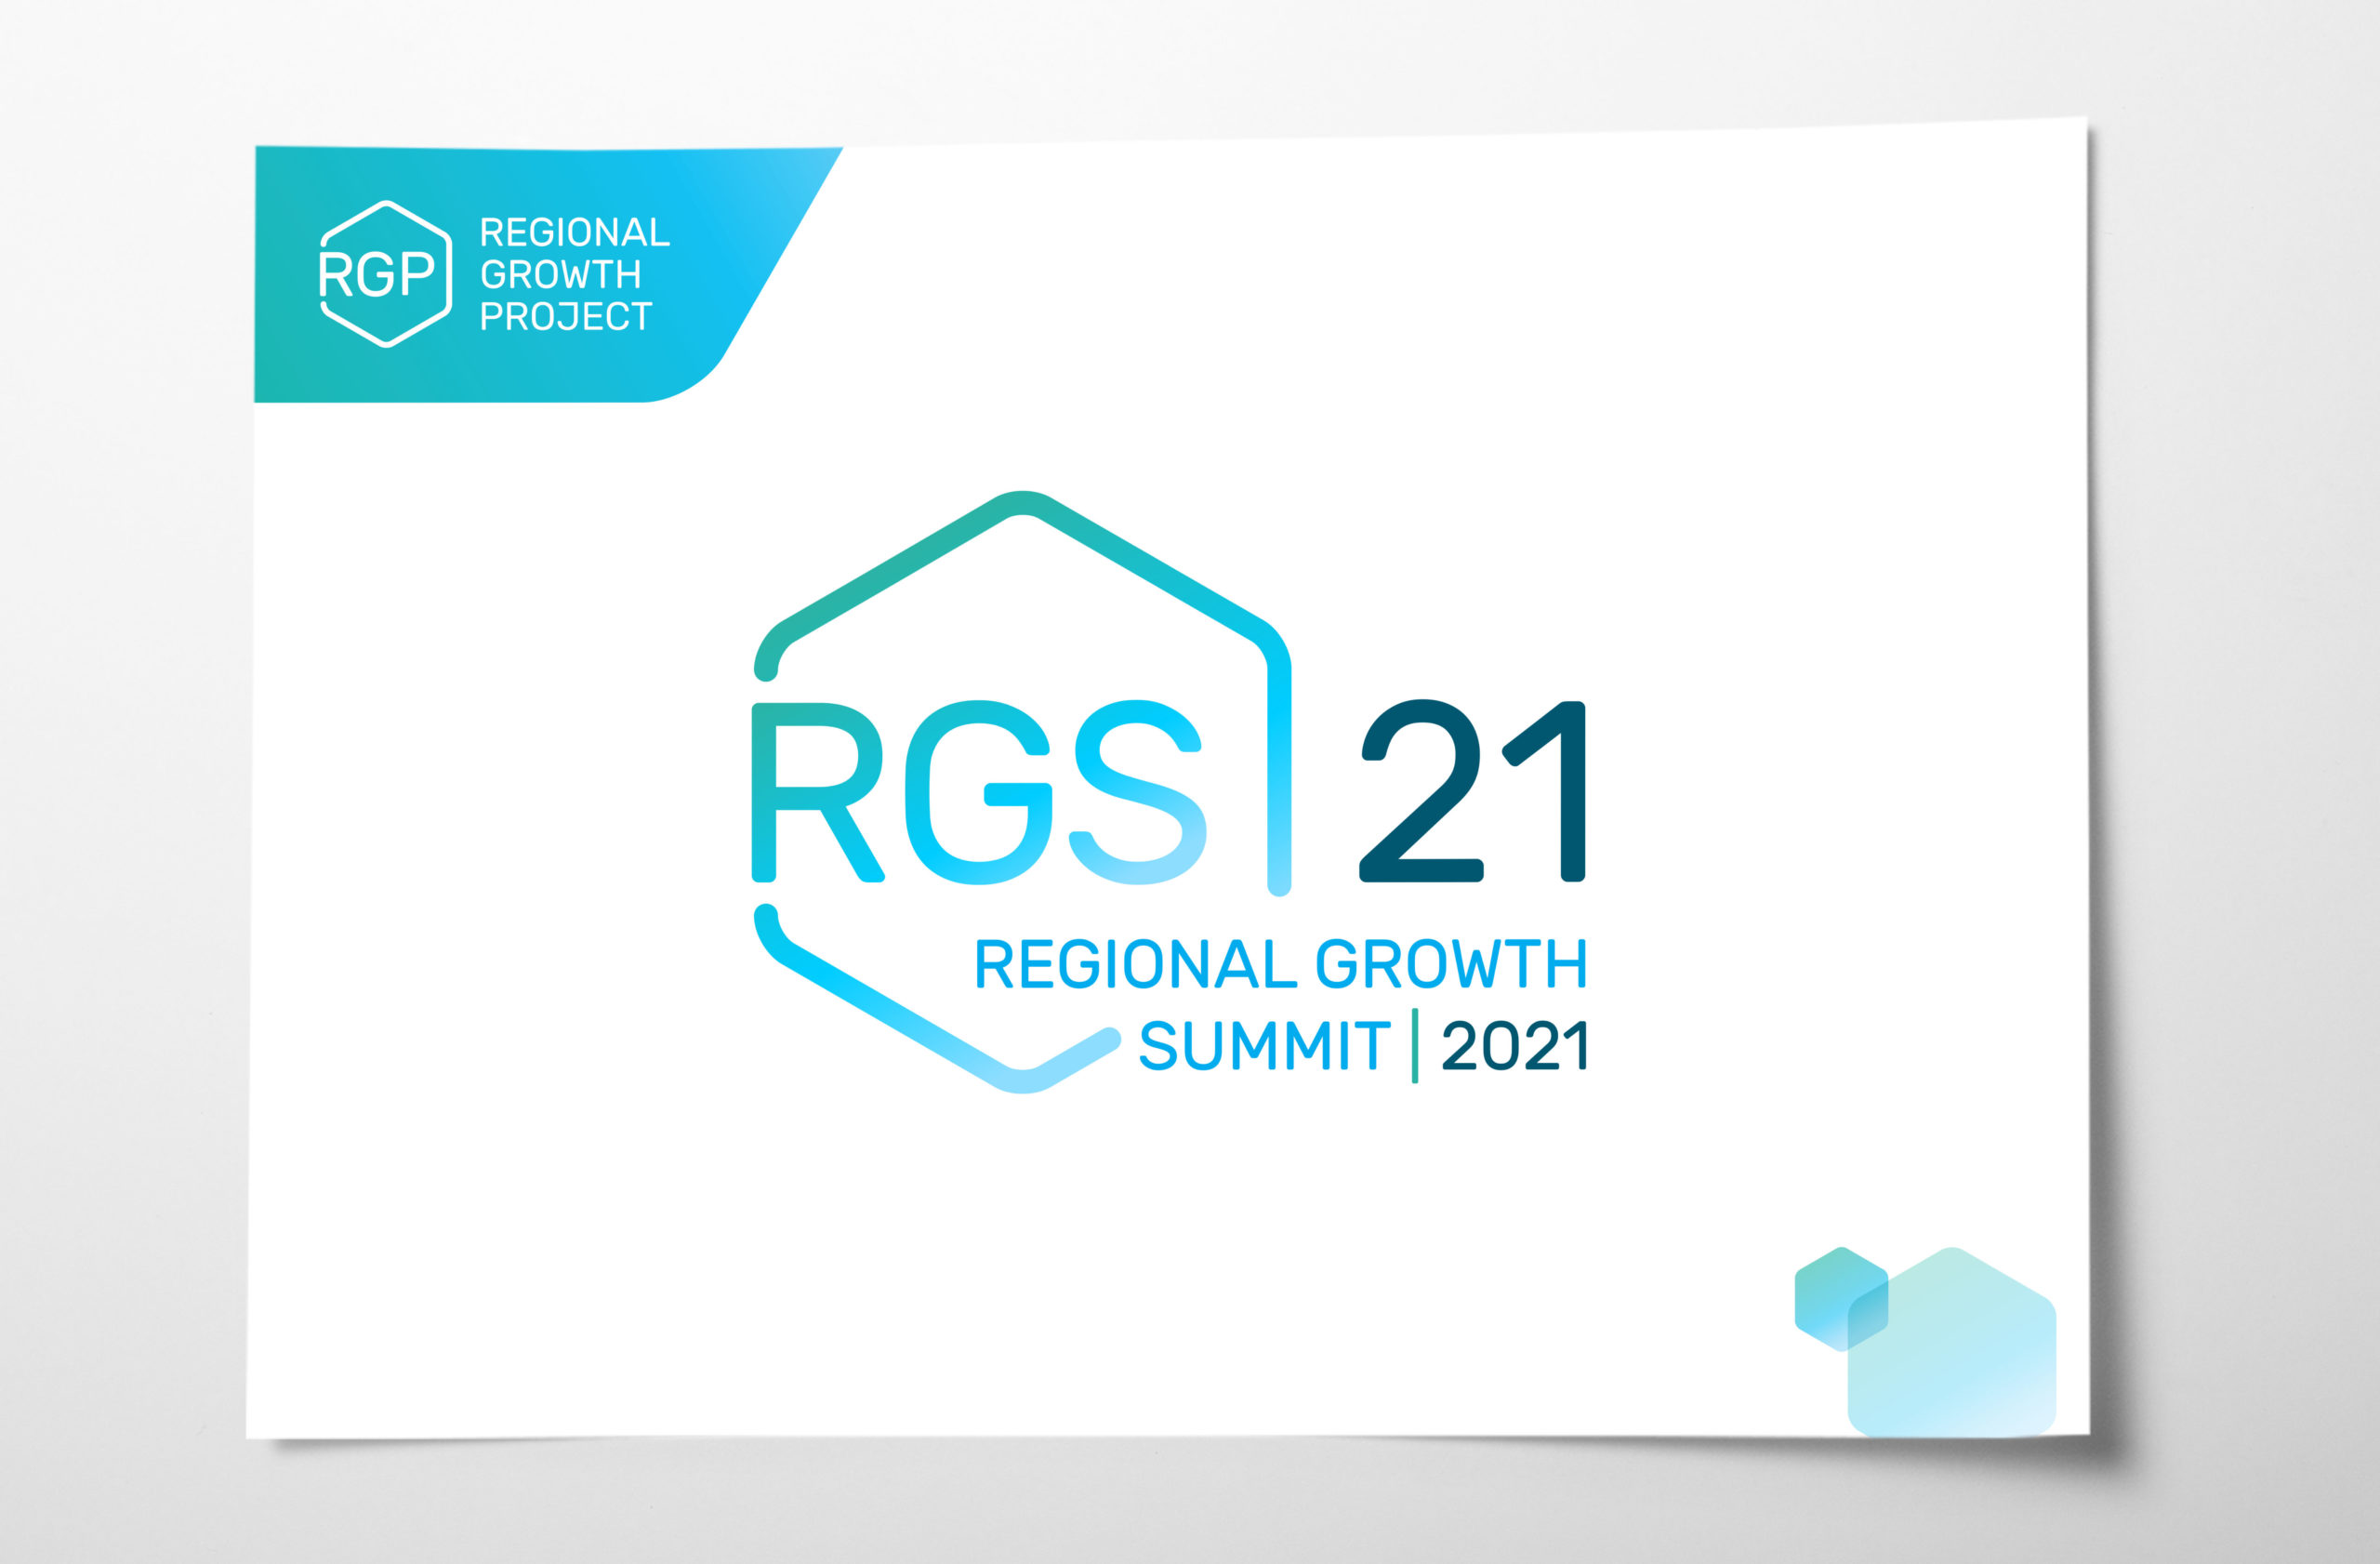 Regional Growth Summit identity